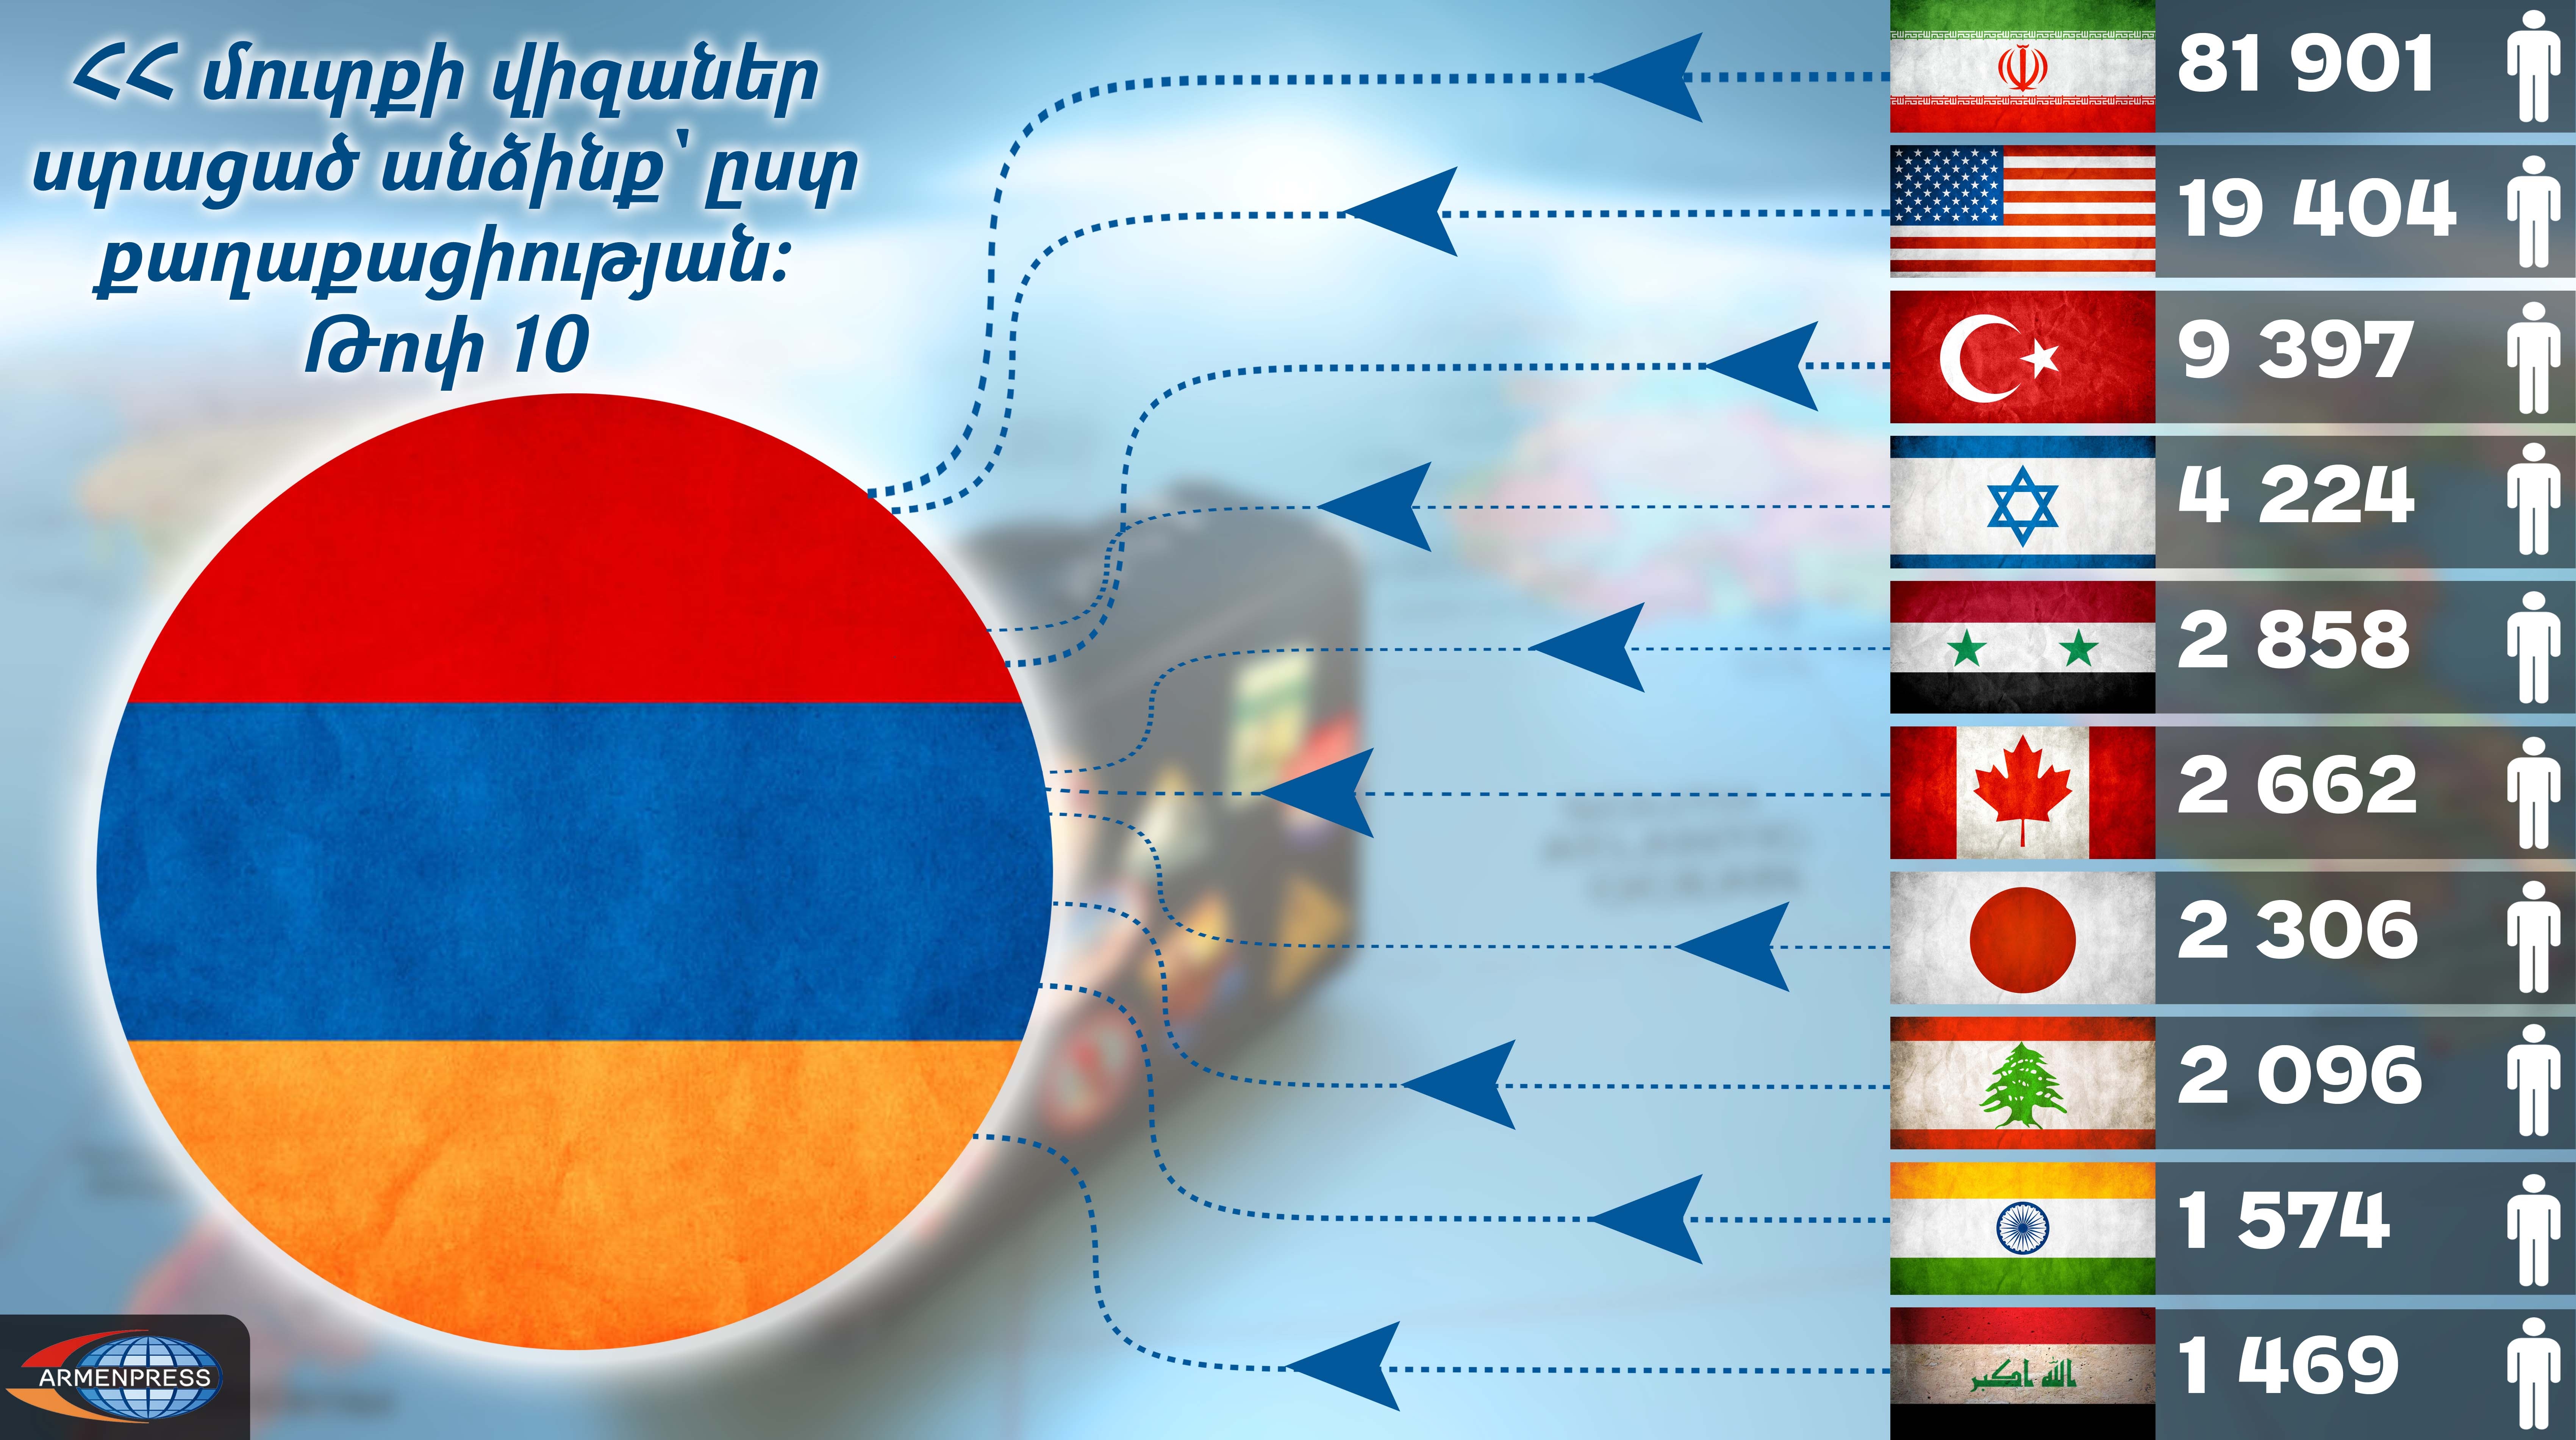 Հայաստանի մուտքի վիզա ստացած անձինք` ըստ քաղաքացիության երկրի. 
ինֆոգրաֆիկա